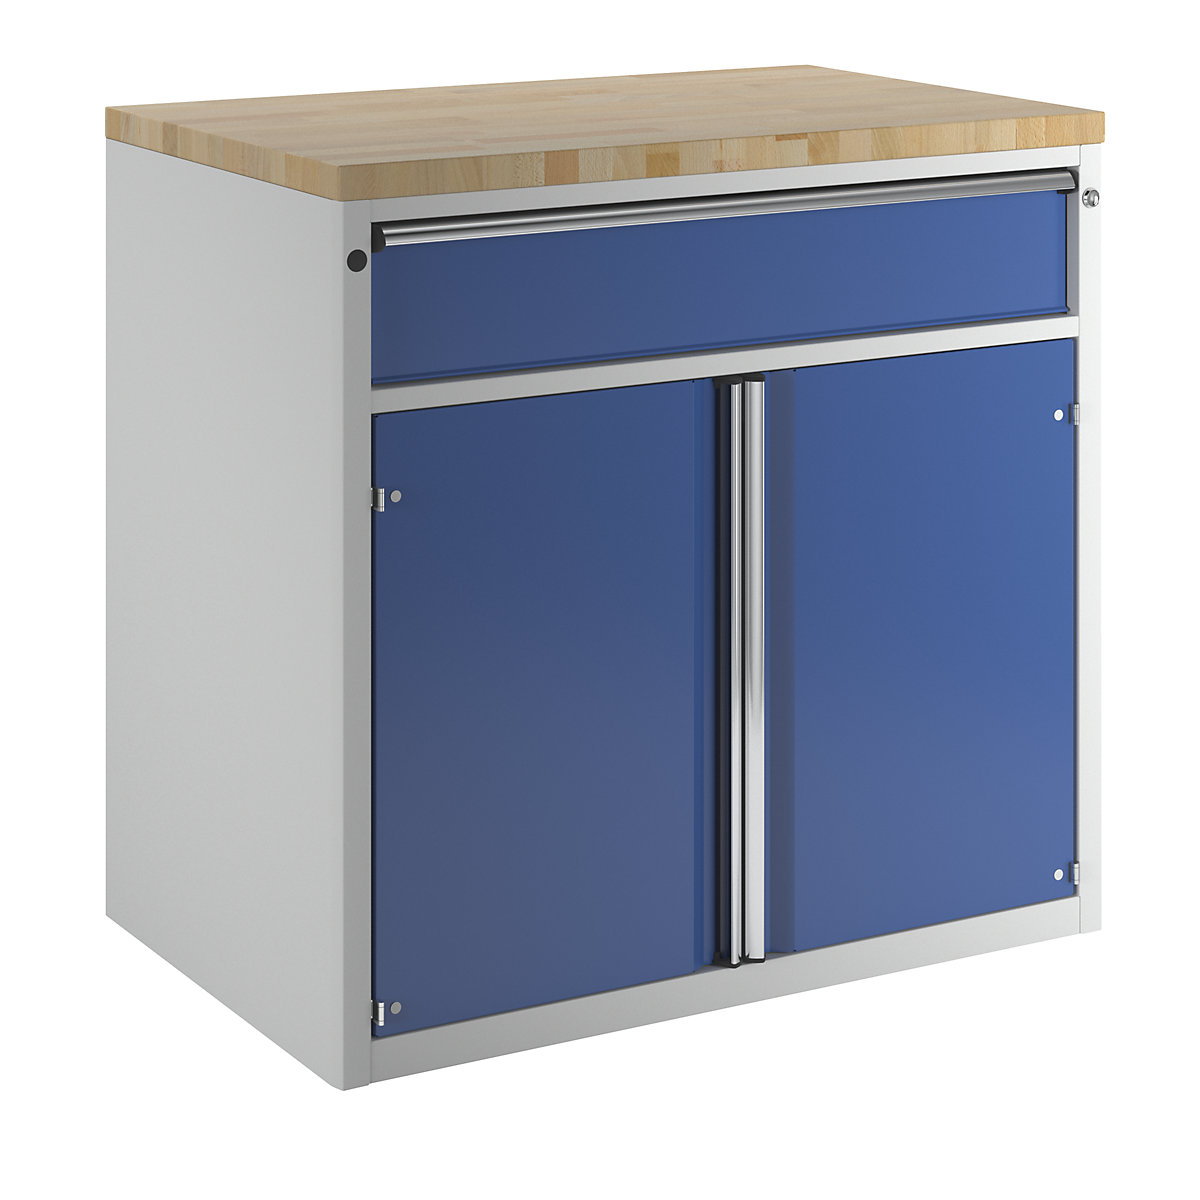 Armario para mostrador para dispensar herramientas y material – ANKE, 1 cajón, 2 puertas, 1 balda, gris / azul-4